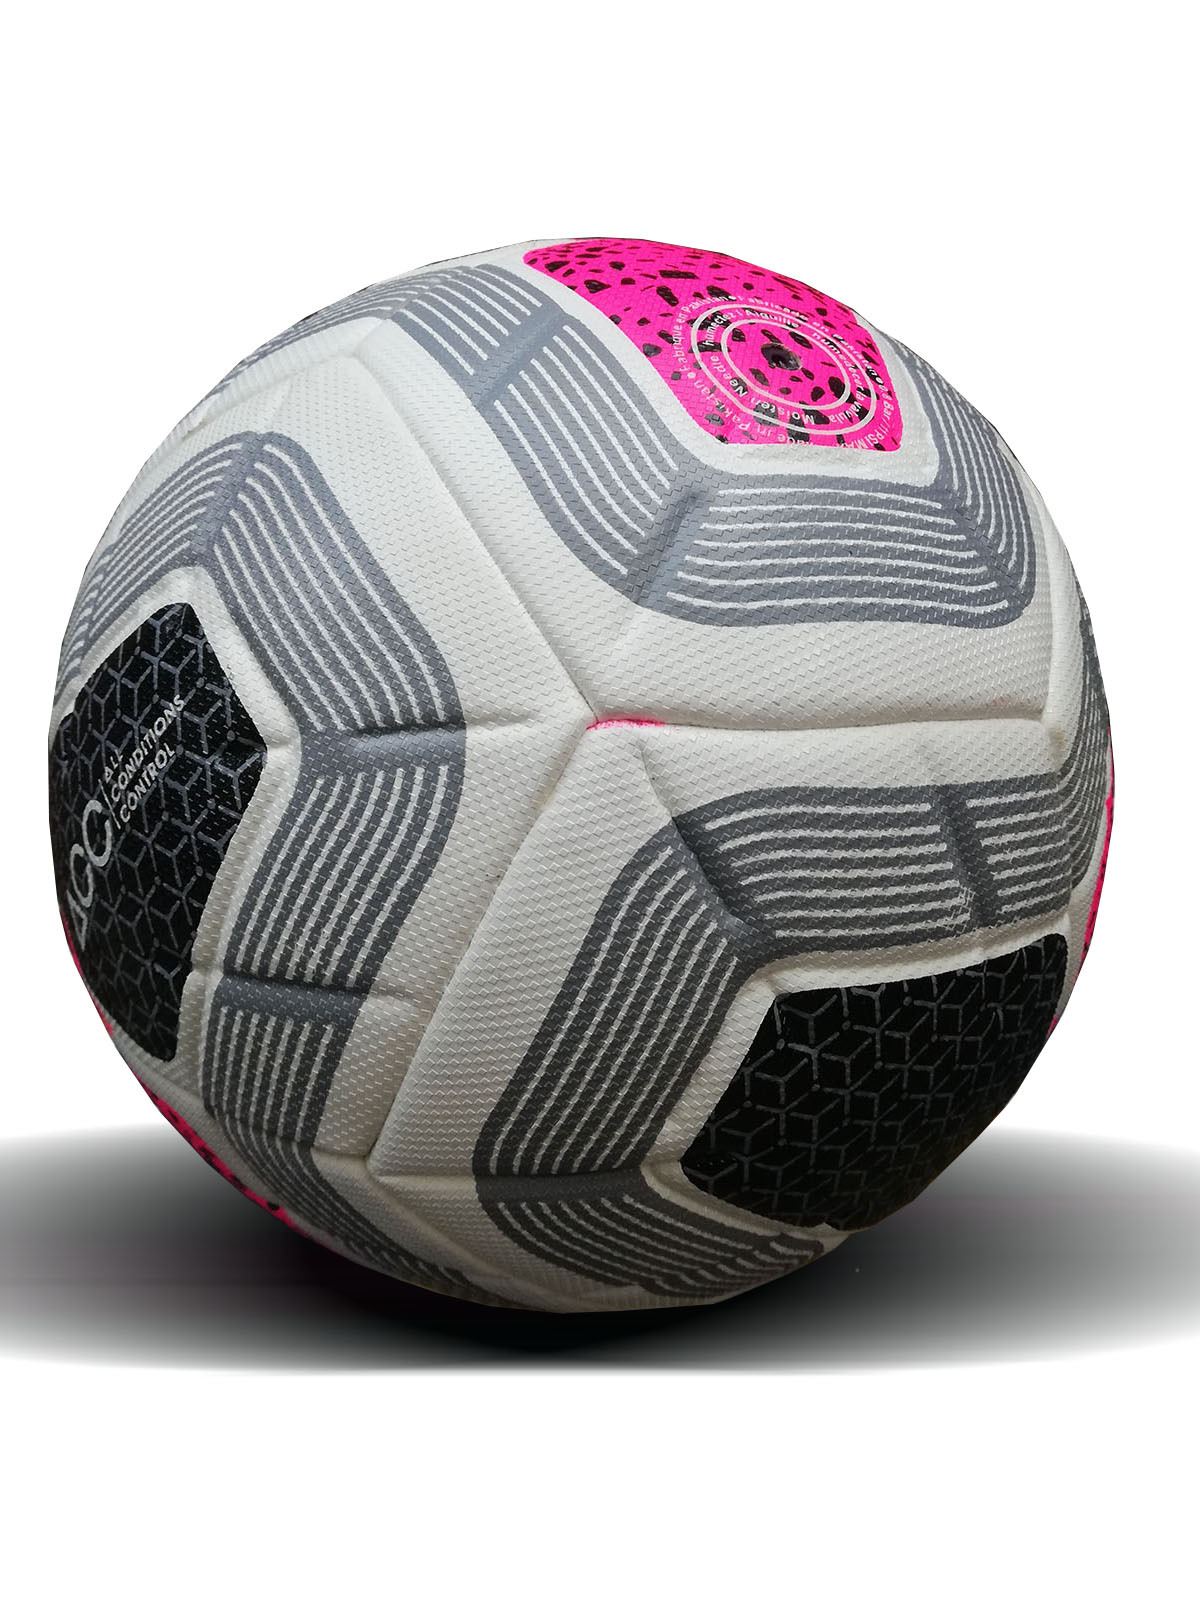 Nike Merlin Premier League Official Soccer Match Ball 2020 ...